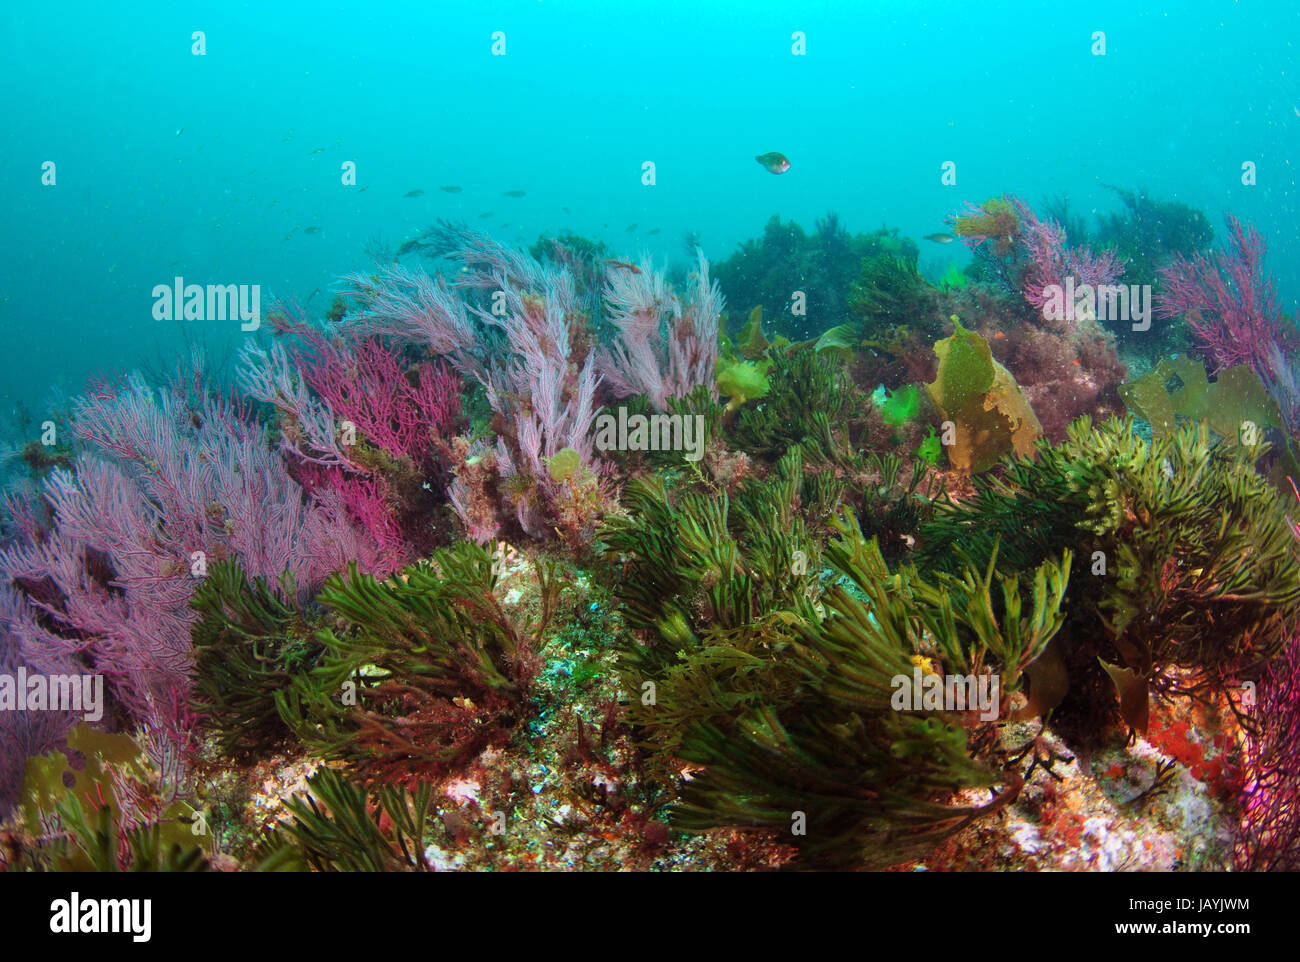 Océano Atlántico ecosistema subacuático con diferentes algas y corales blandos Foto de stock